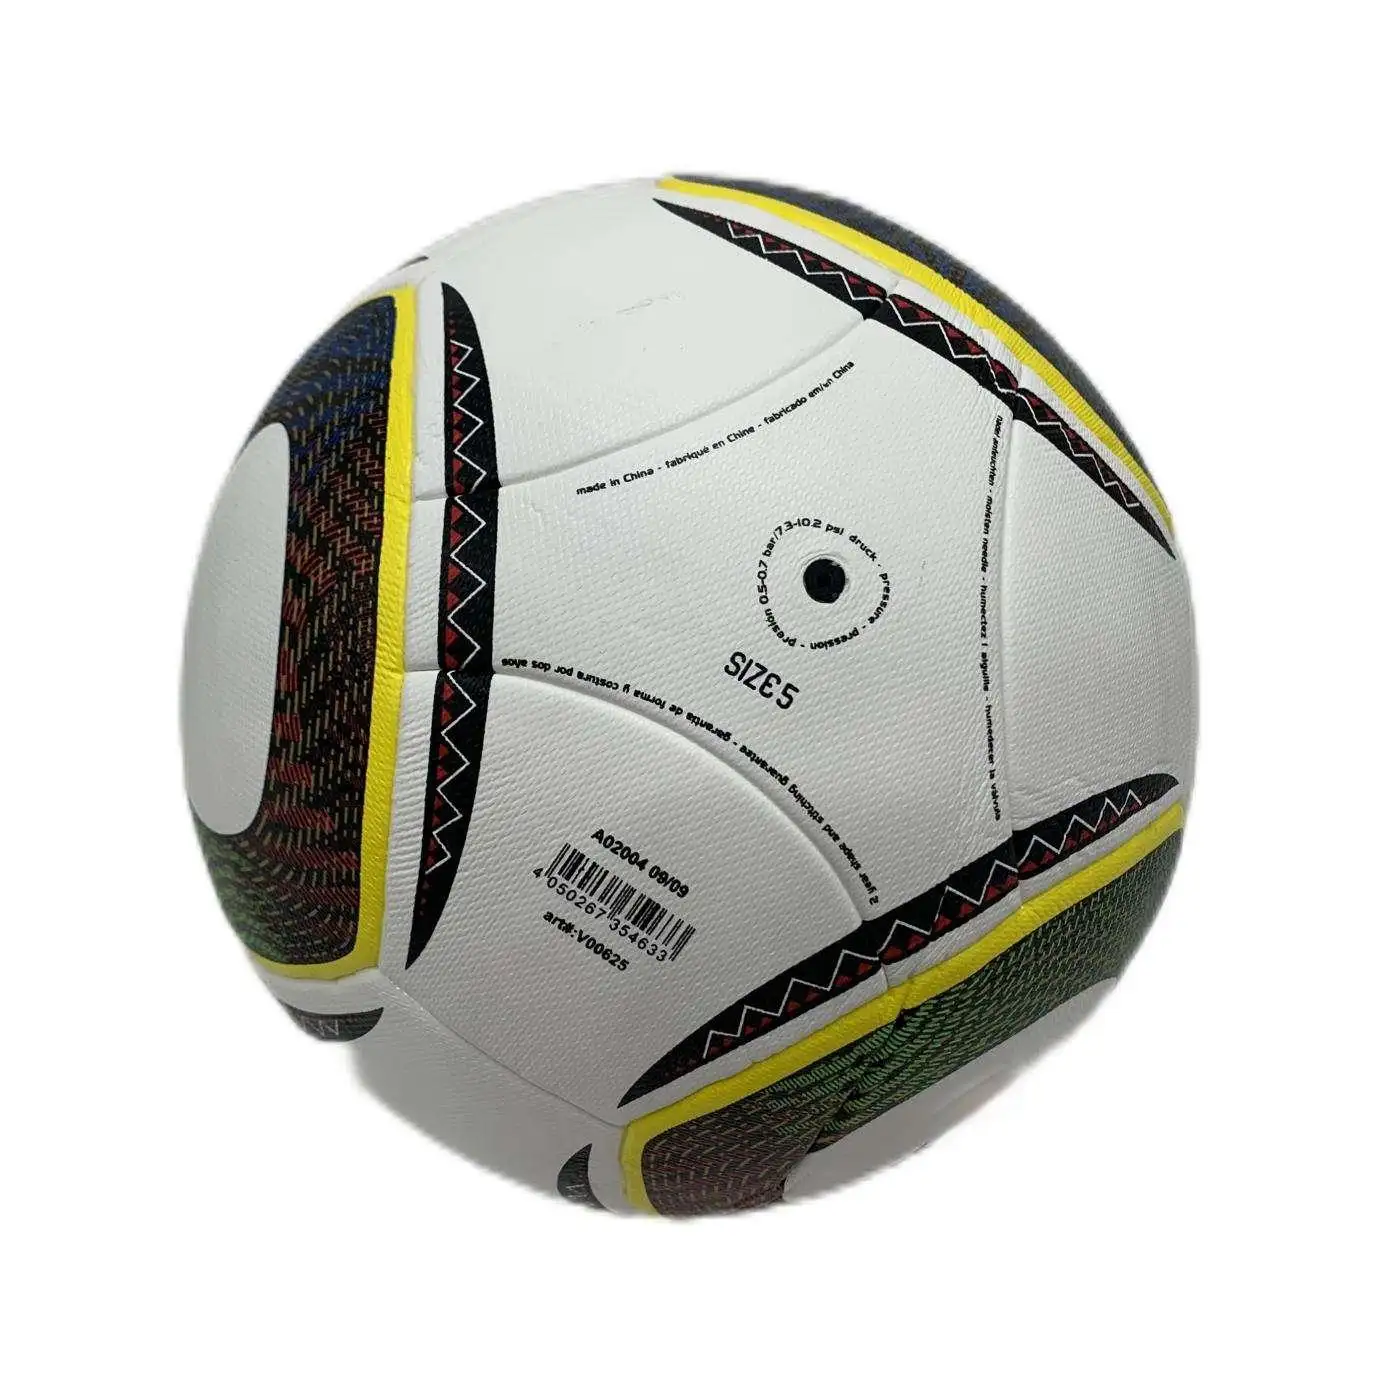 2010 ballons de football officiels d'Afrique du Sud processus de matériau Pu ballons de football de ligue professionnelle de haute qualité